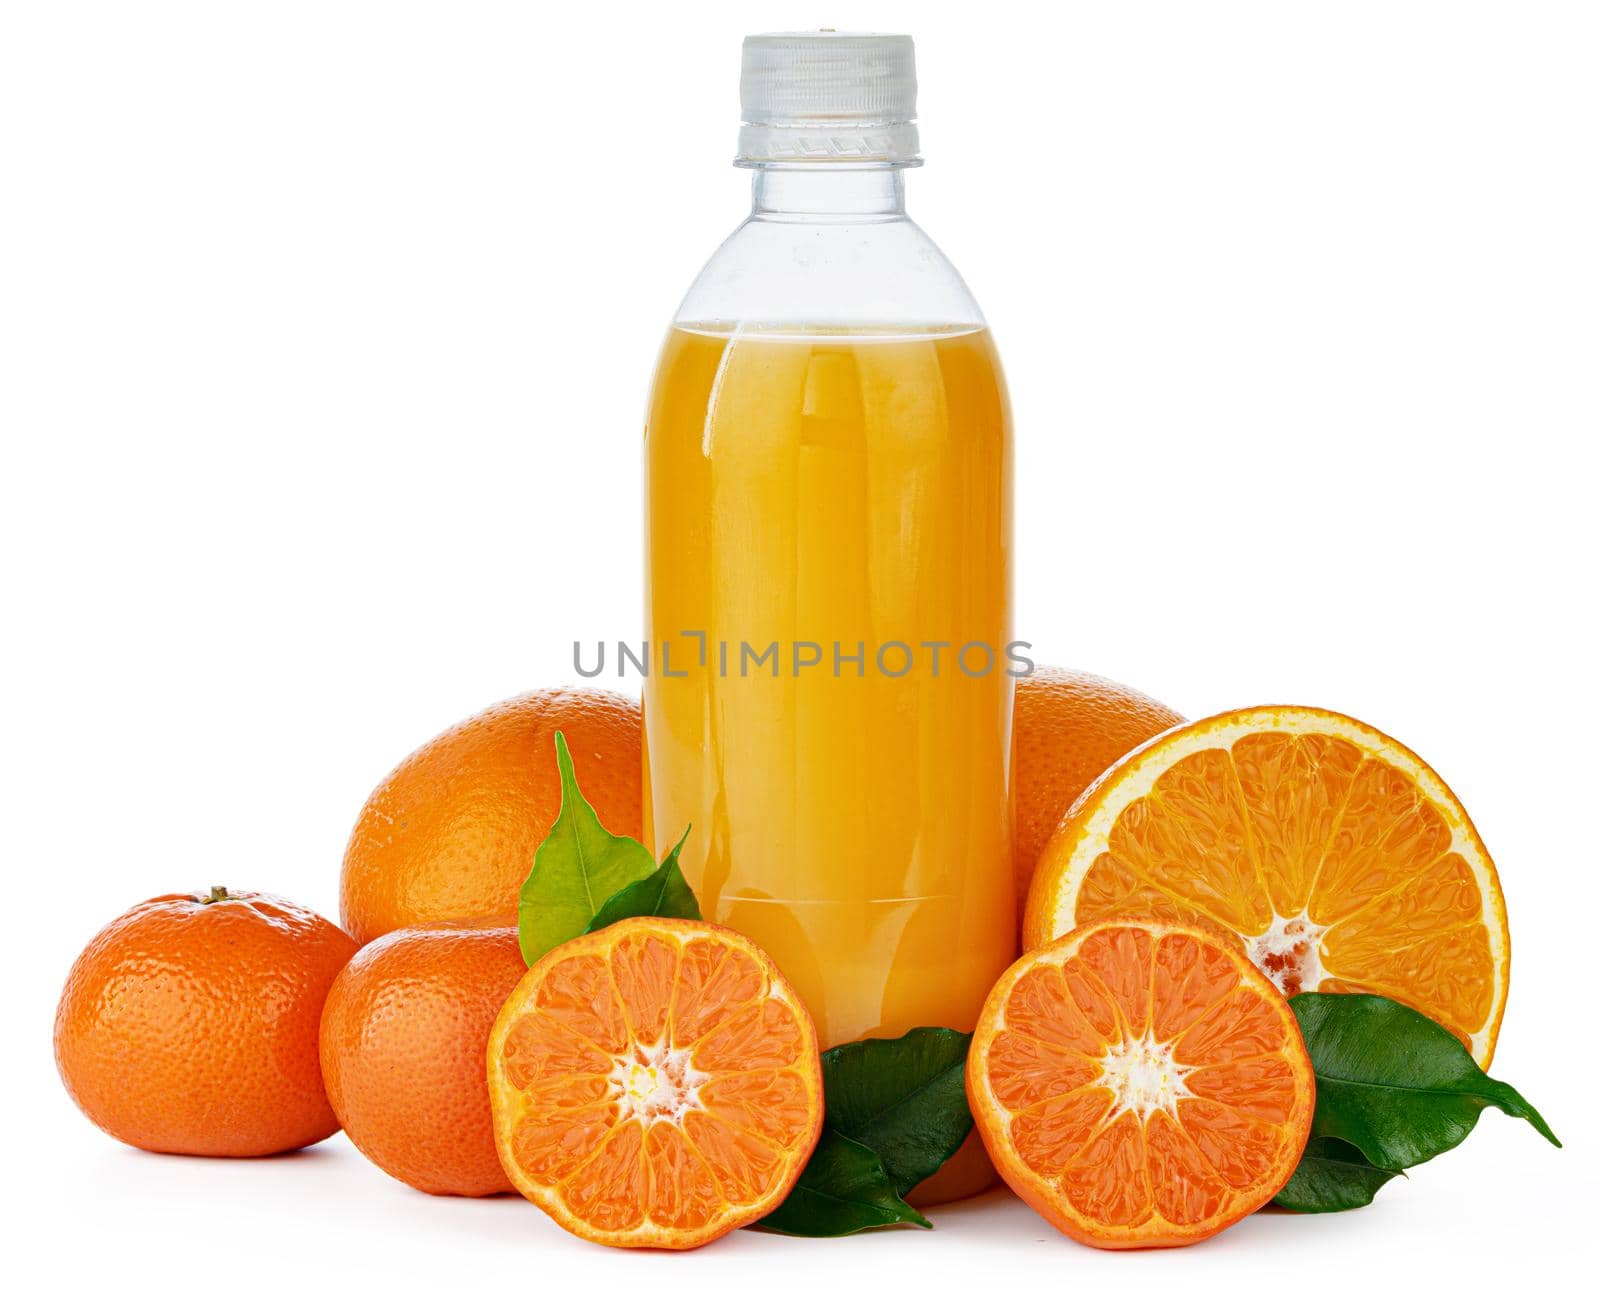 Bottle of fresh orange juice isolated on white background